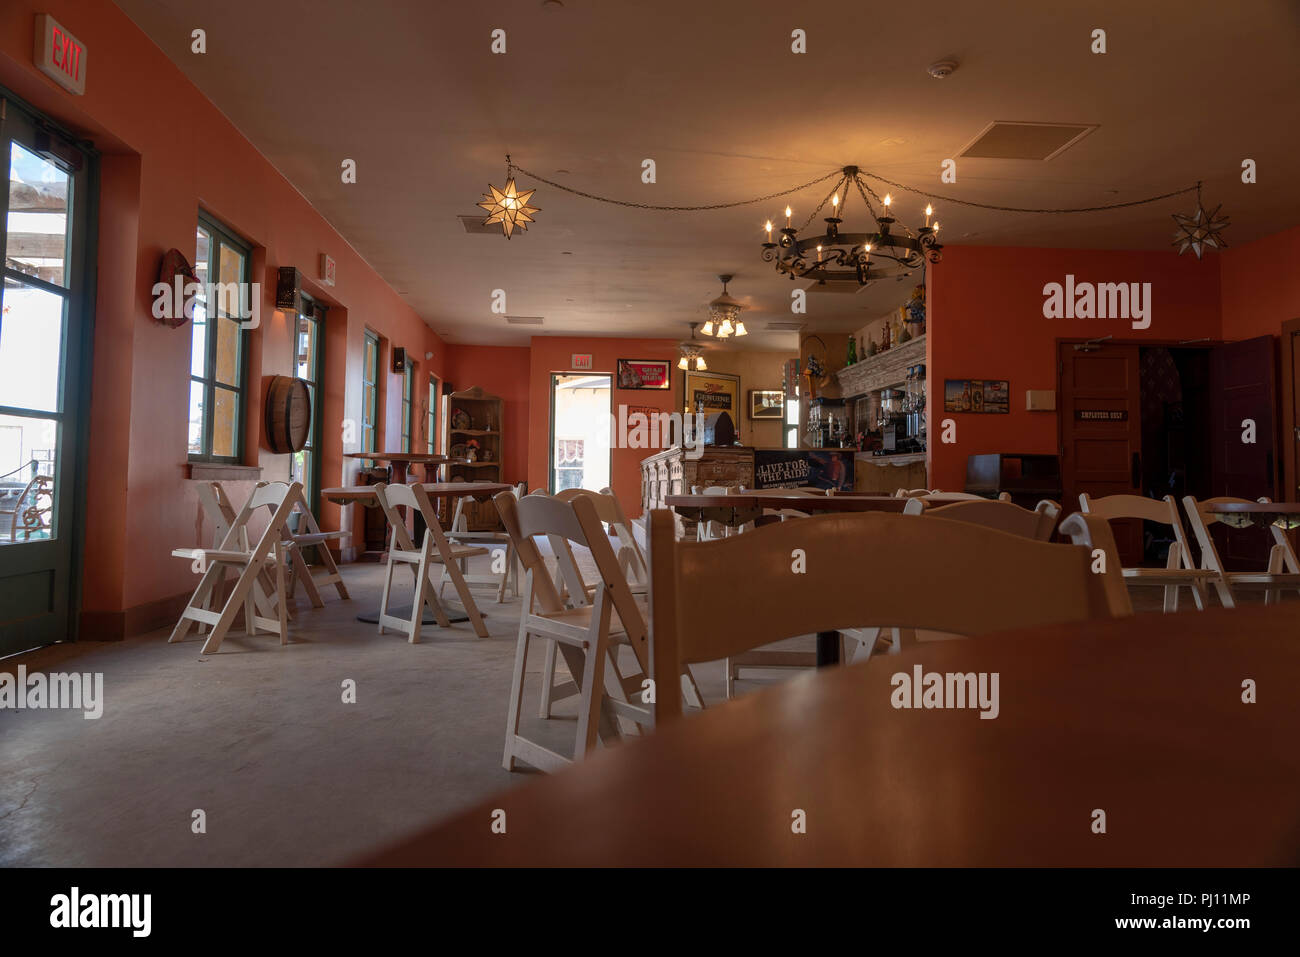 Restaurant mit Bar am Ende, Innenraum, orange Wände, weiße Klappbare Stühle und Tische. Stockfoto